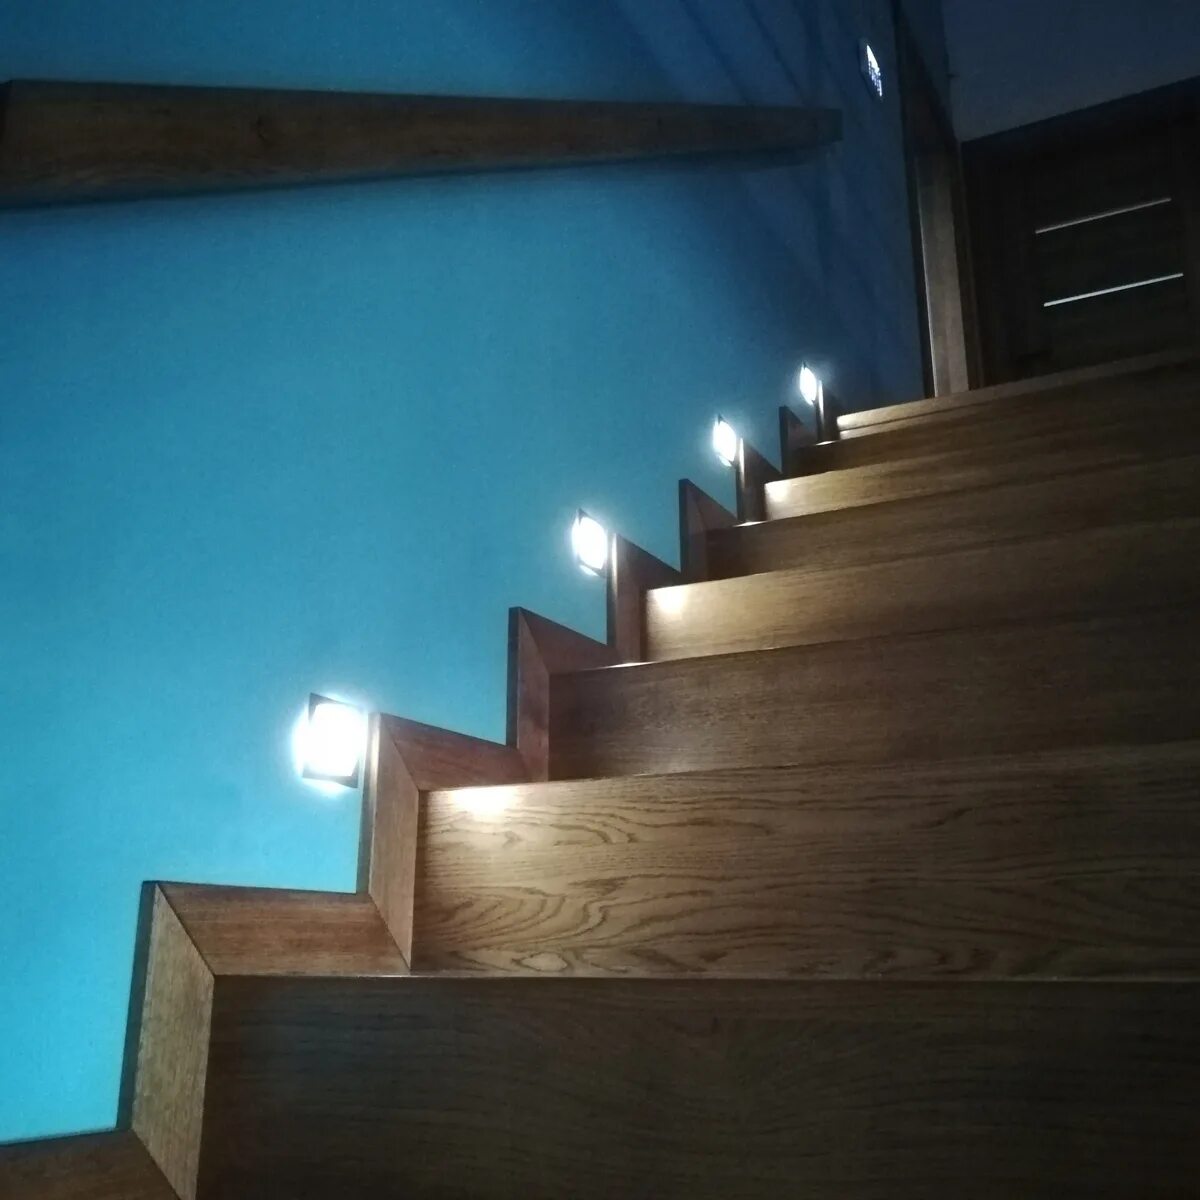 M5450b7 подсветка лестницы. M5450 подсветка лестницы. Stairslight автоматическая подсветка лестниц. Светильник на для освещения лестницы. Подсветить 22